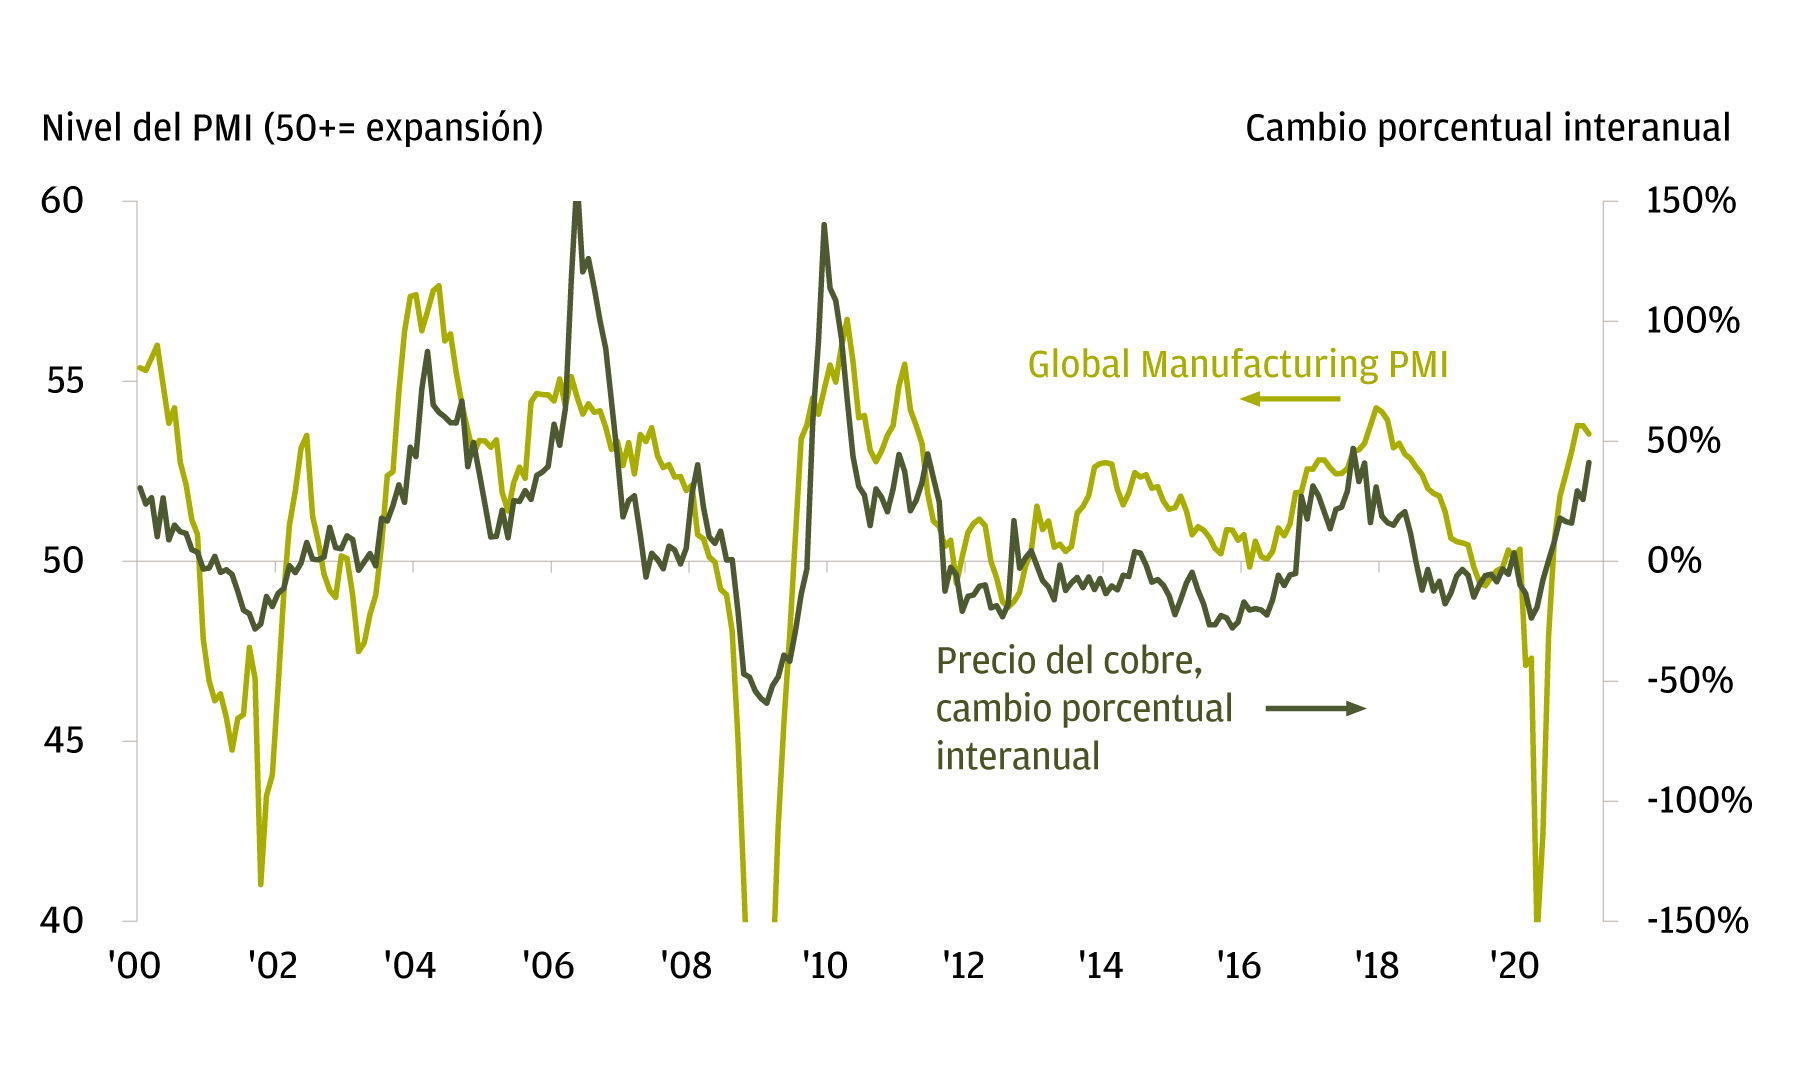 Este gráfico muestra el Índice Manufacturero Global y el cambio porcentual interanual en los precios de las materias primas entre enero de 2000 y enero de 2001. Demuestra que el cambio en los precios del cobre tiende a seguir de cerca al ciclo manufacturero y, por extensión, al crecimiento económico. 